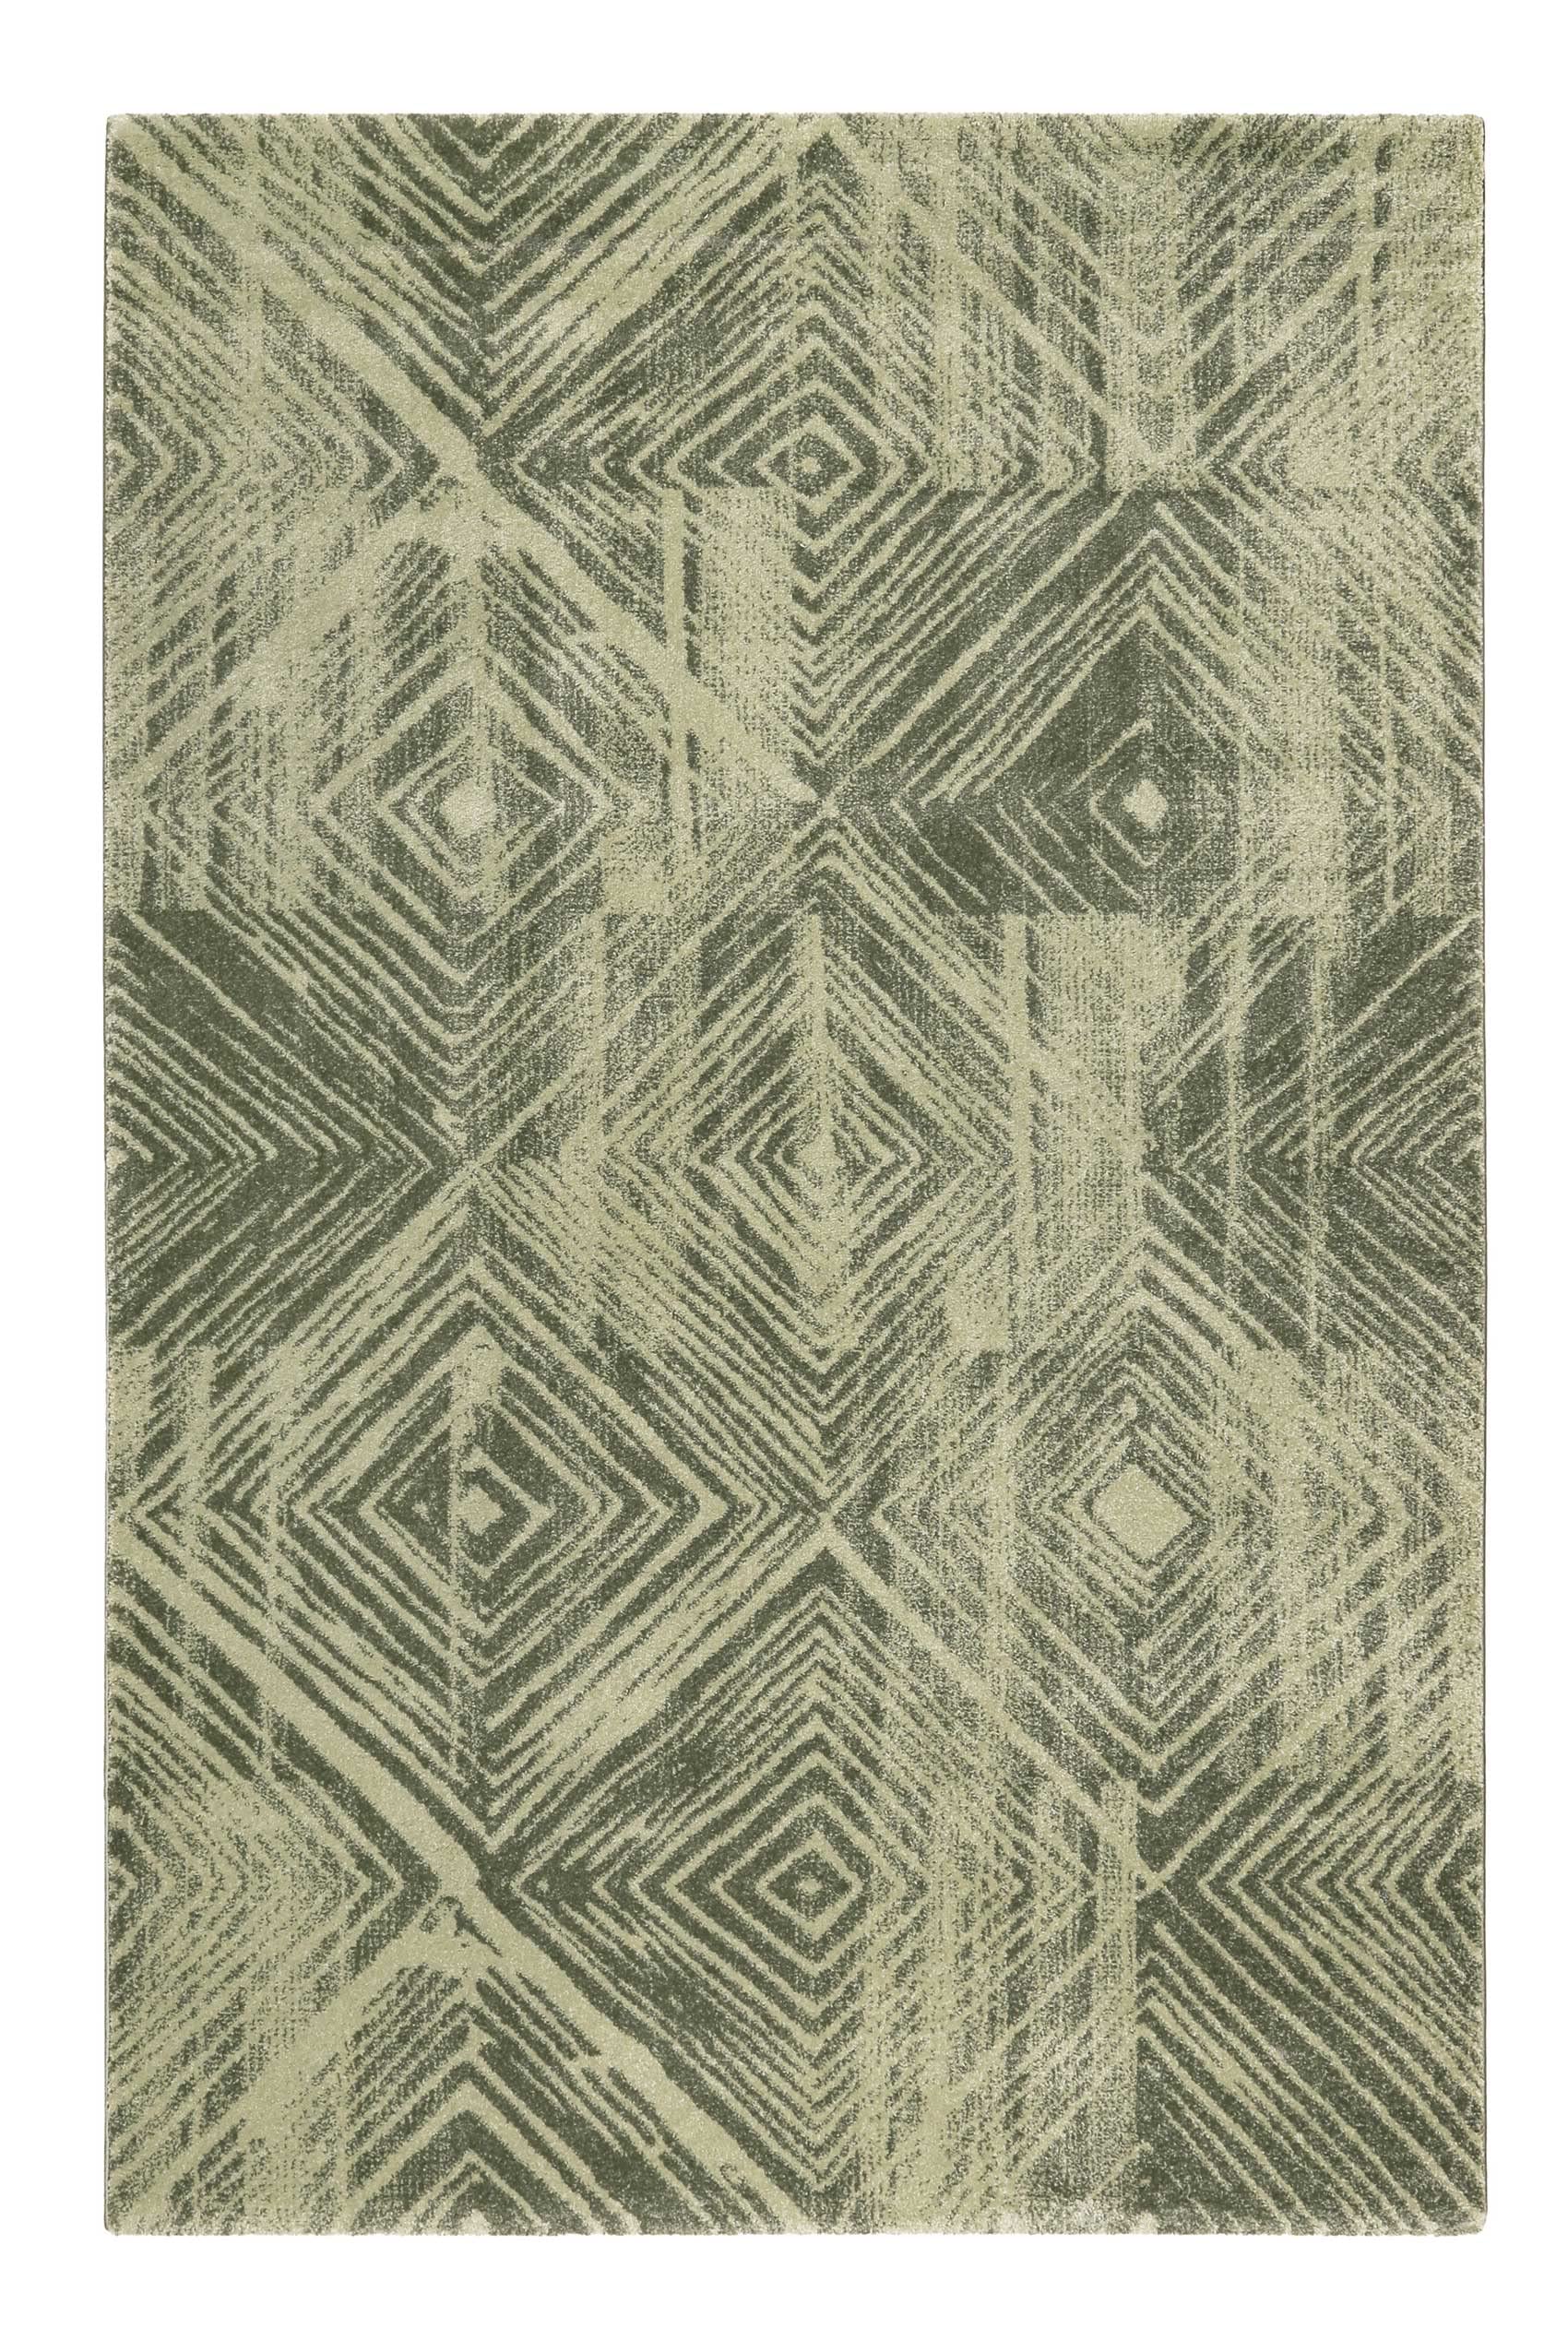 Esprit Home Teppich - Läufer, weicher moderner Kurzflor Teppich perfekt geeignet für das Wohnzimmer und Schlafzimmer, sehr pflegeleicht, Cuba (133 x 200 cm, grün)